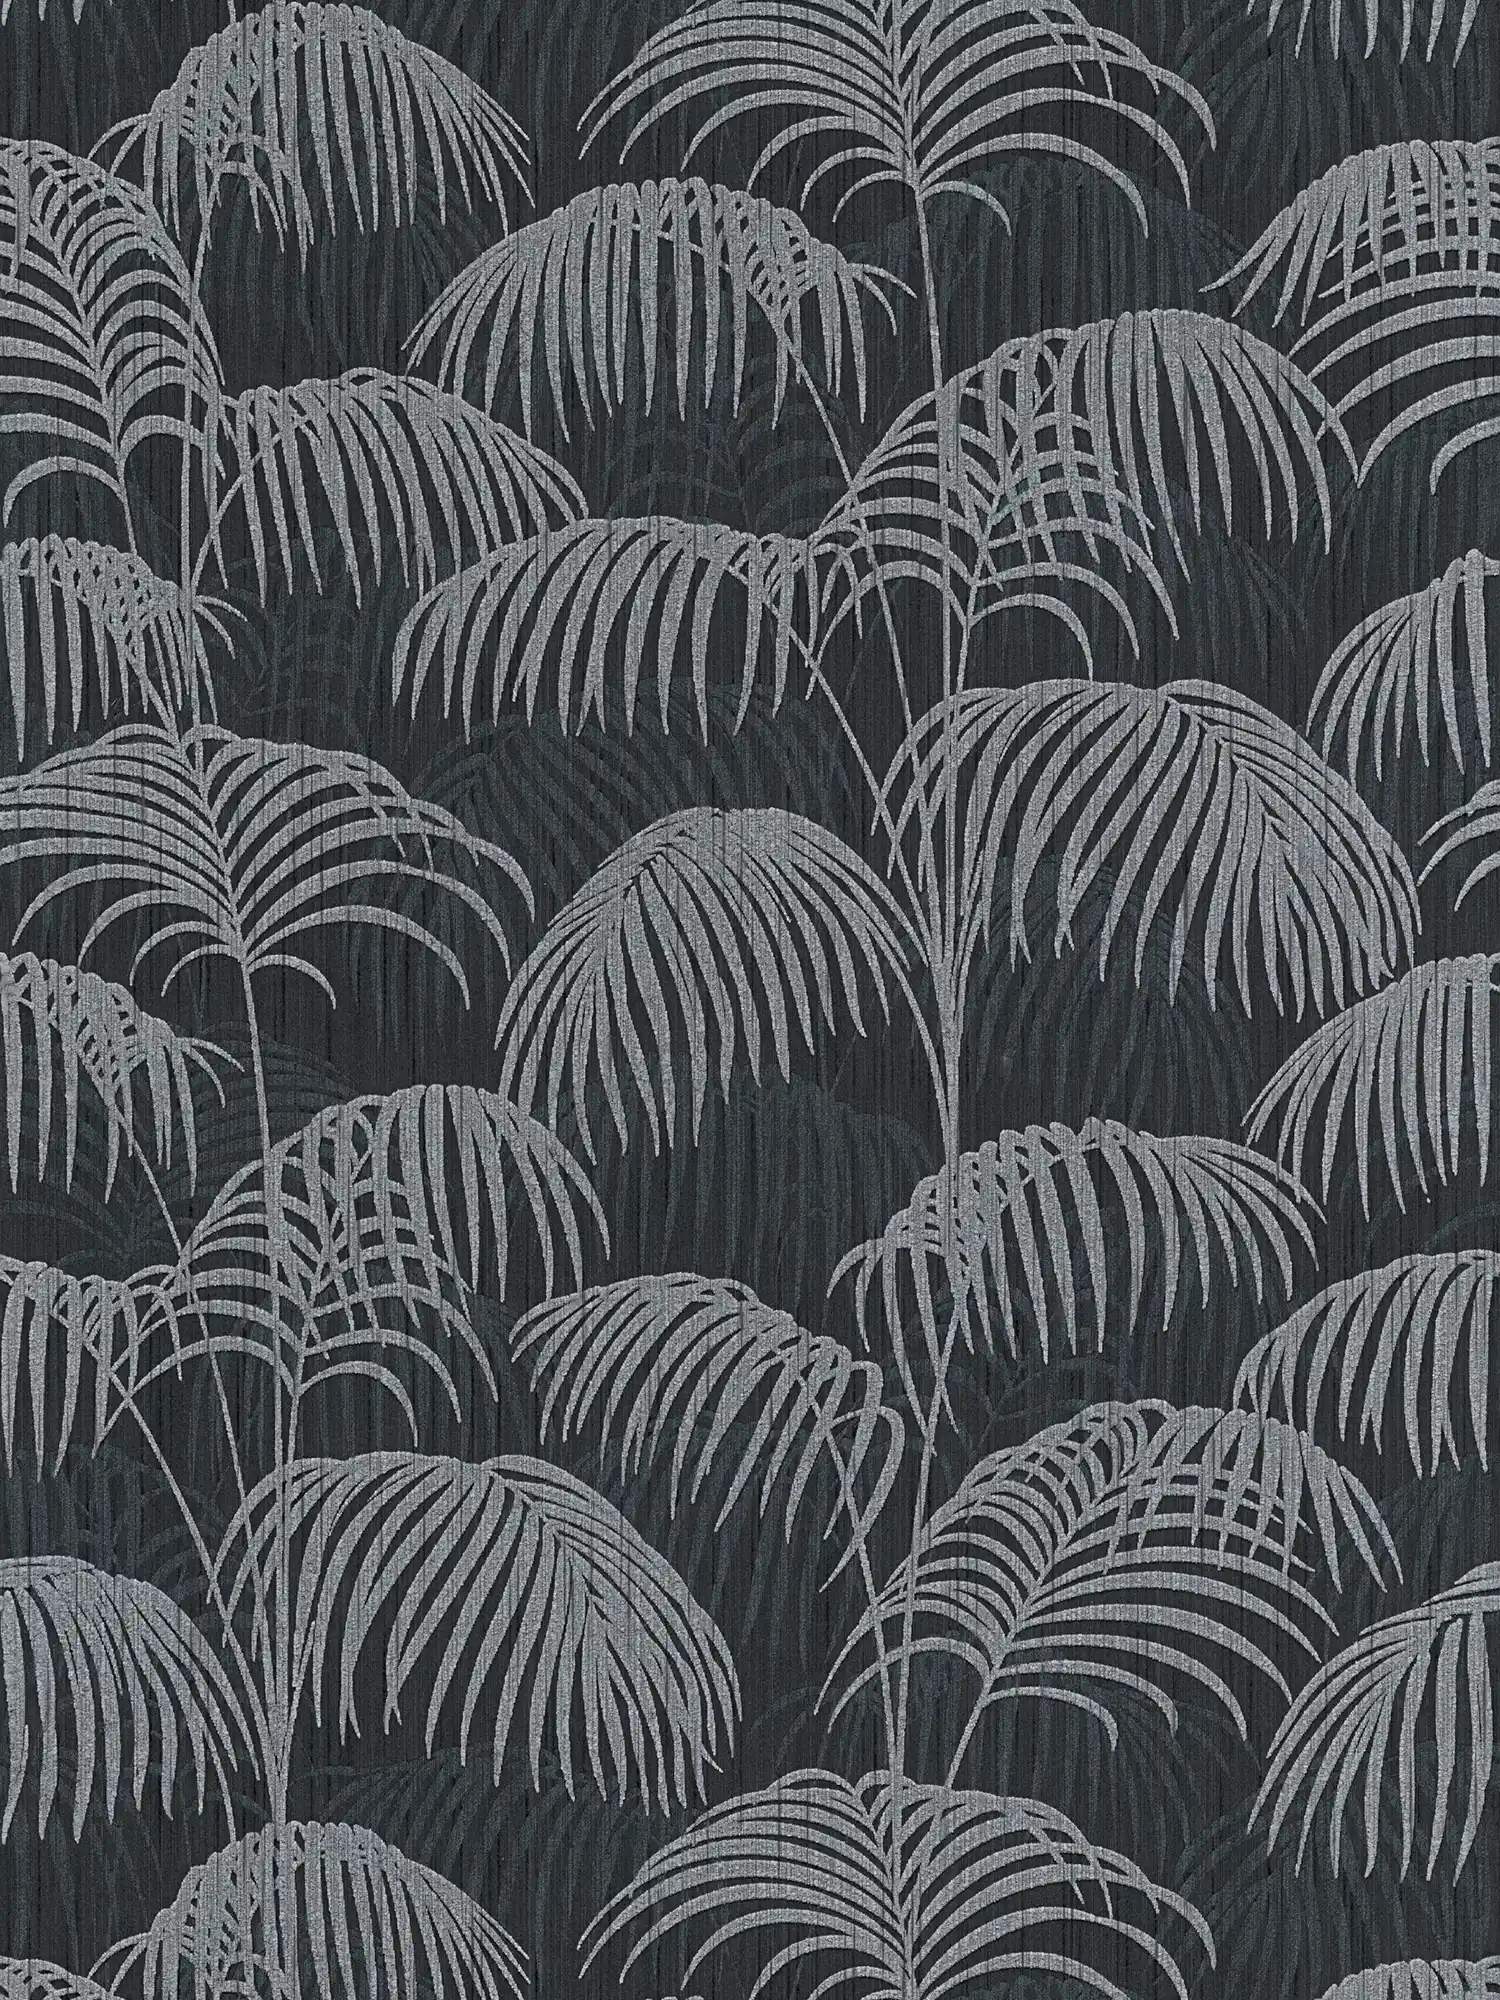         Tapete Palmblätter Natur Muster mit Tiefeneffekt – Grau, Schwarz
    